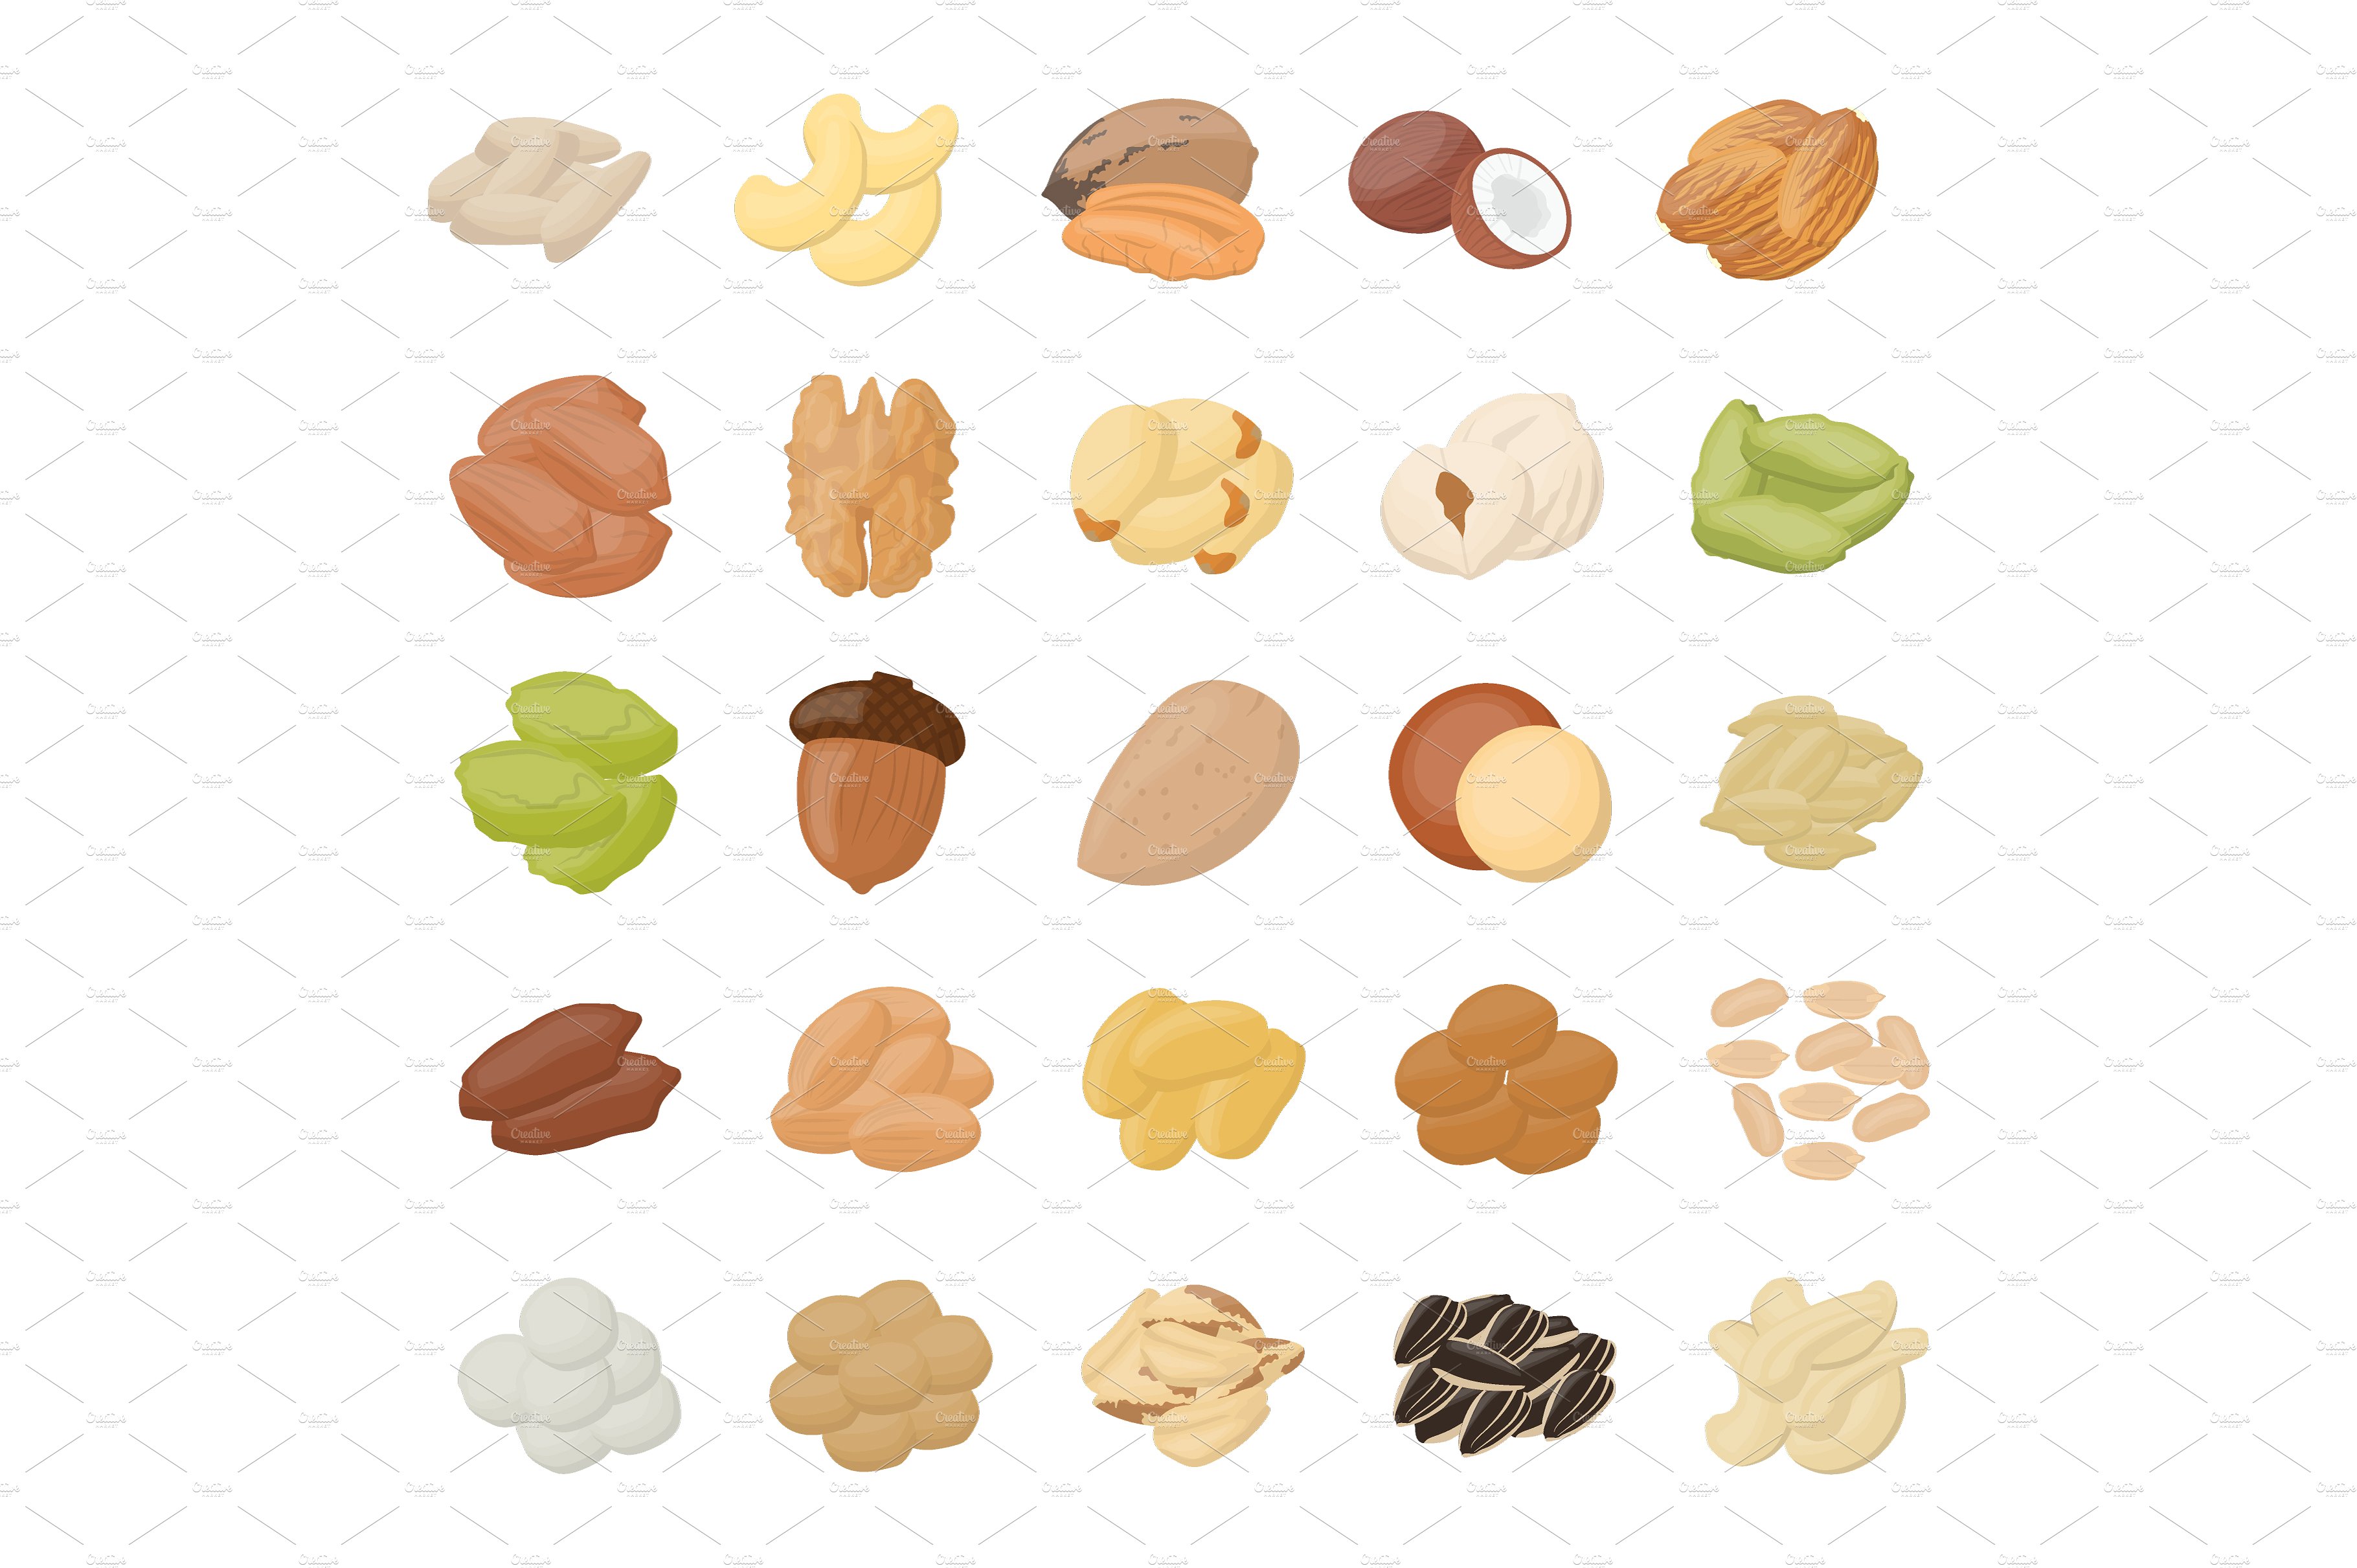 扁平化坚果图标素材 55 Nuts Flat Icons #